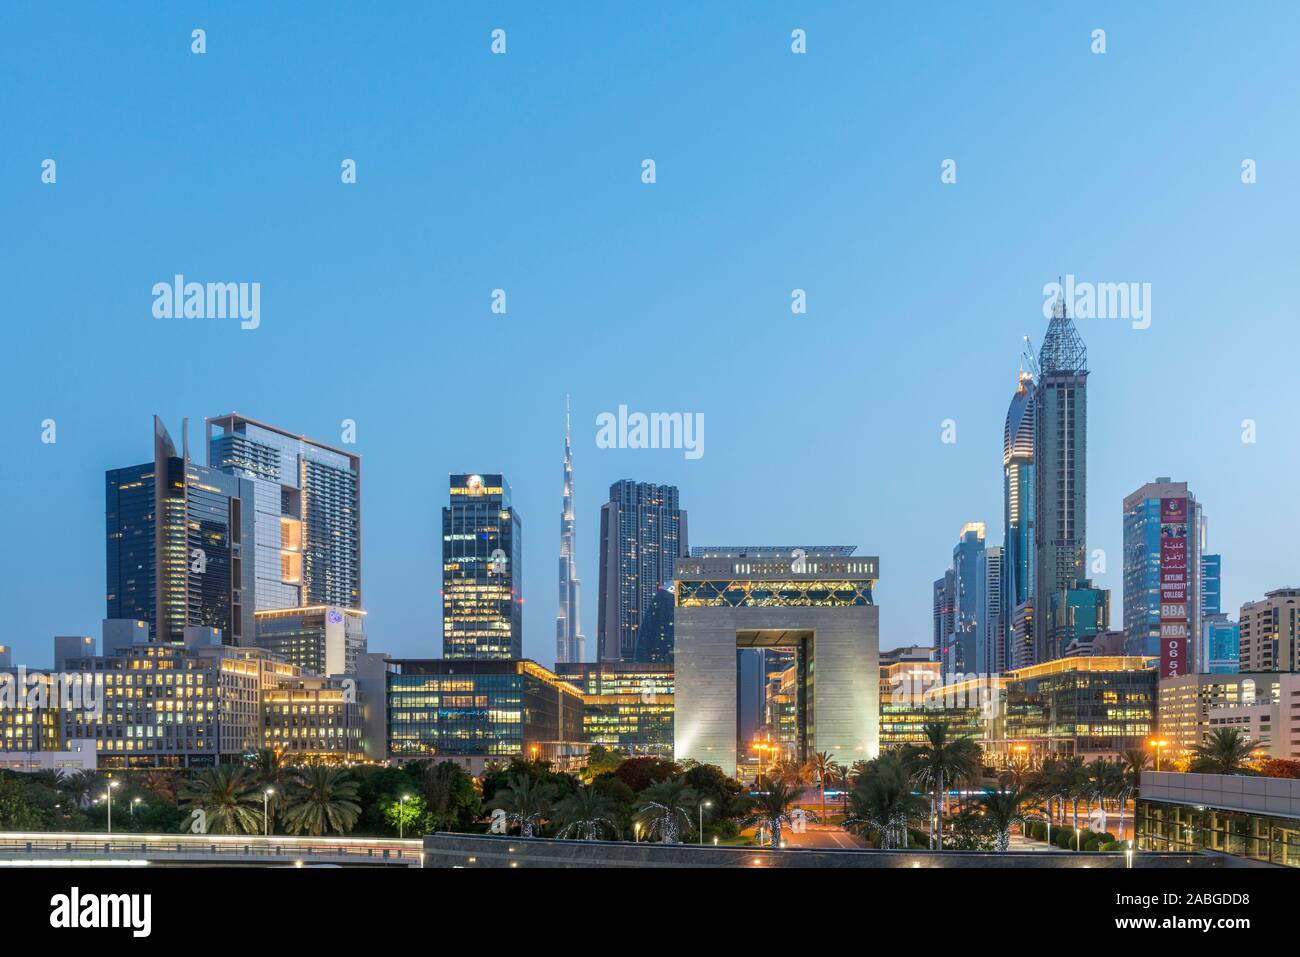 Abend-Ansicht von DIFC und Finanz- und Business Viertel von Dubai Vereinigte Arabische Emirate Stockfoto